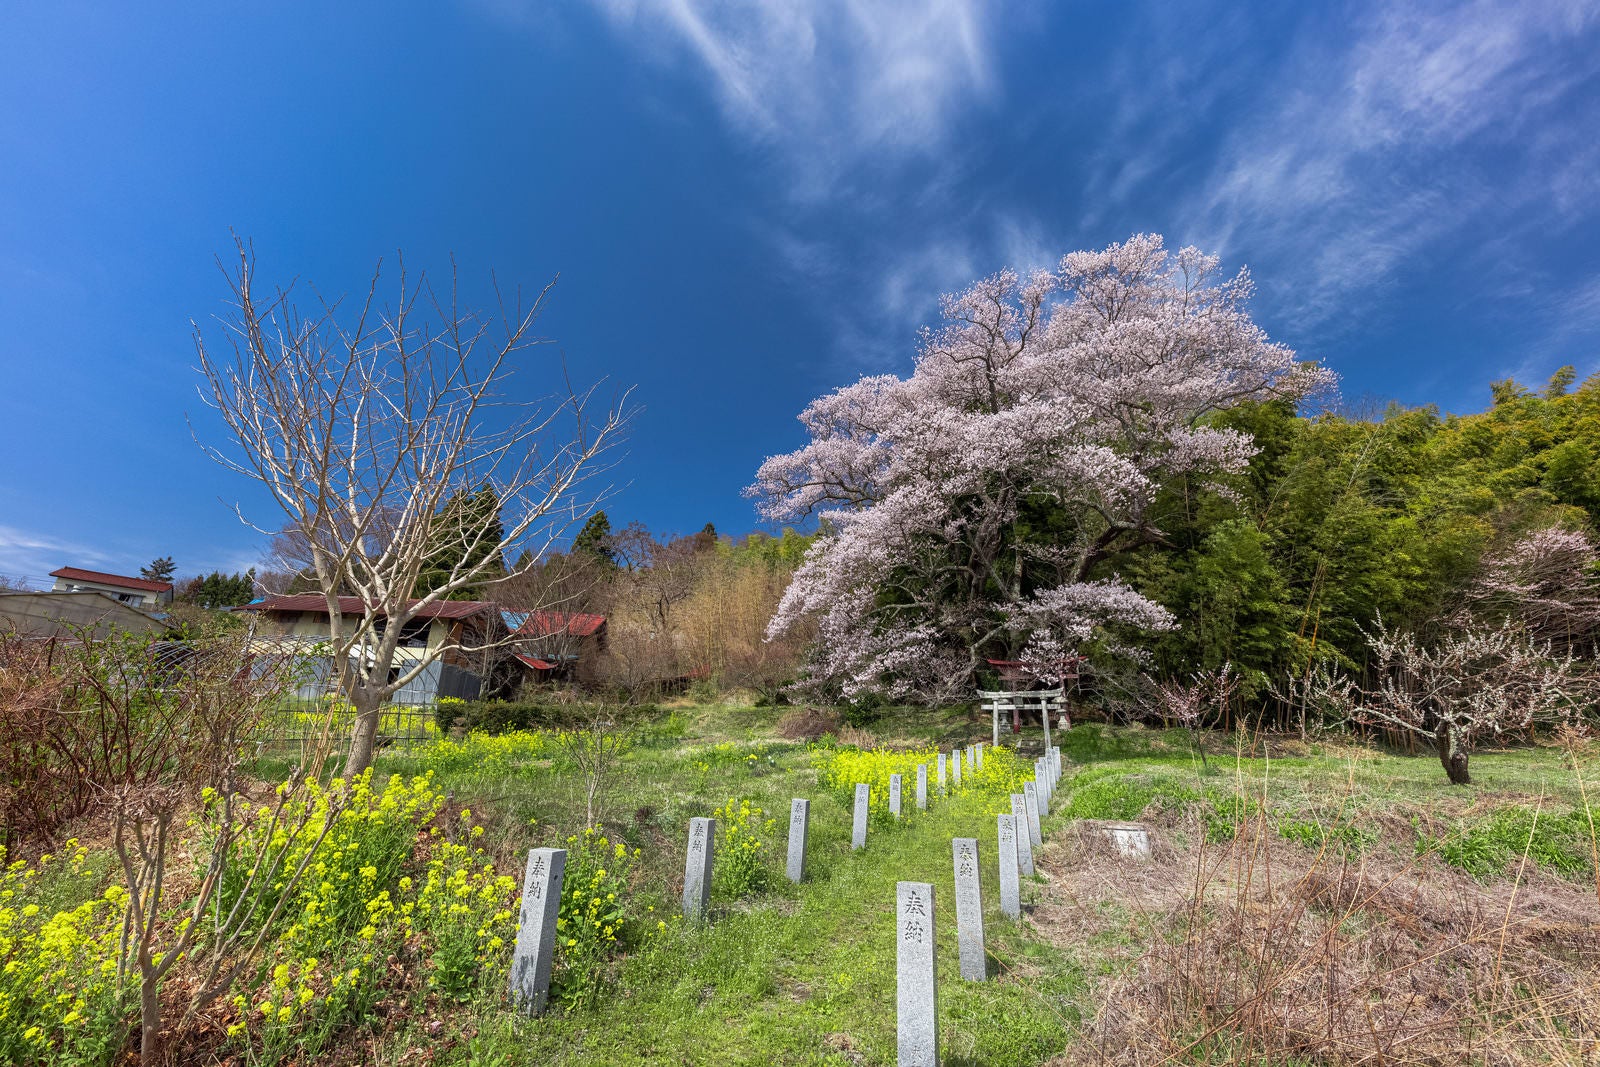 「よく晴れた空と大和田稲荷神社の子授け桜」の写真